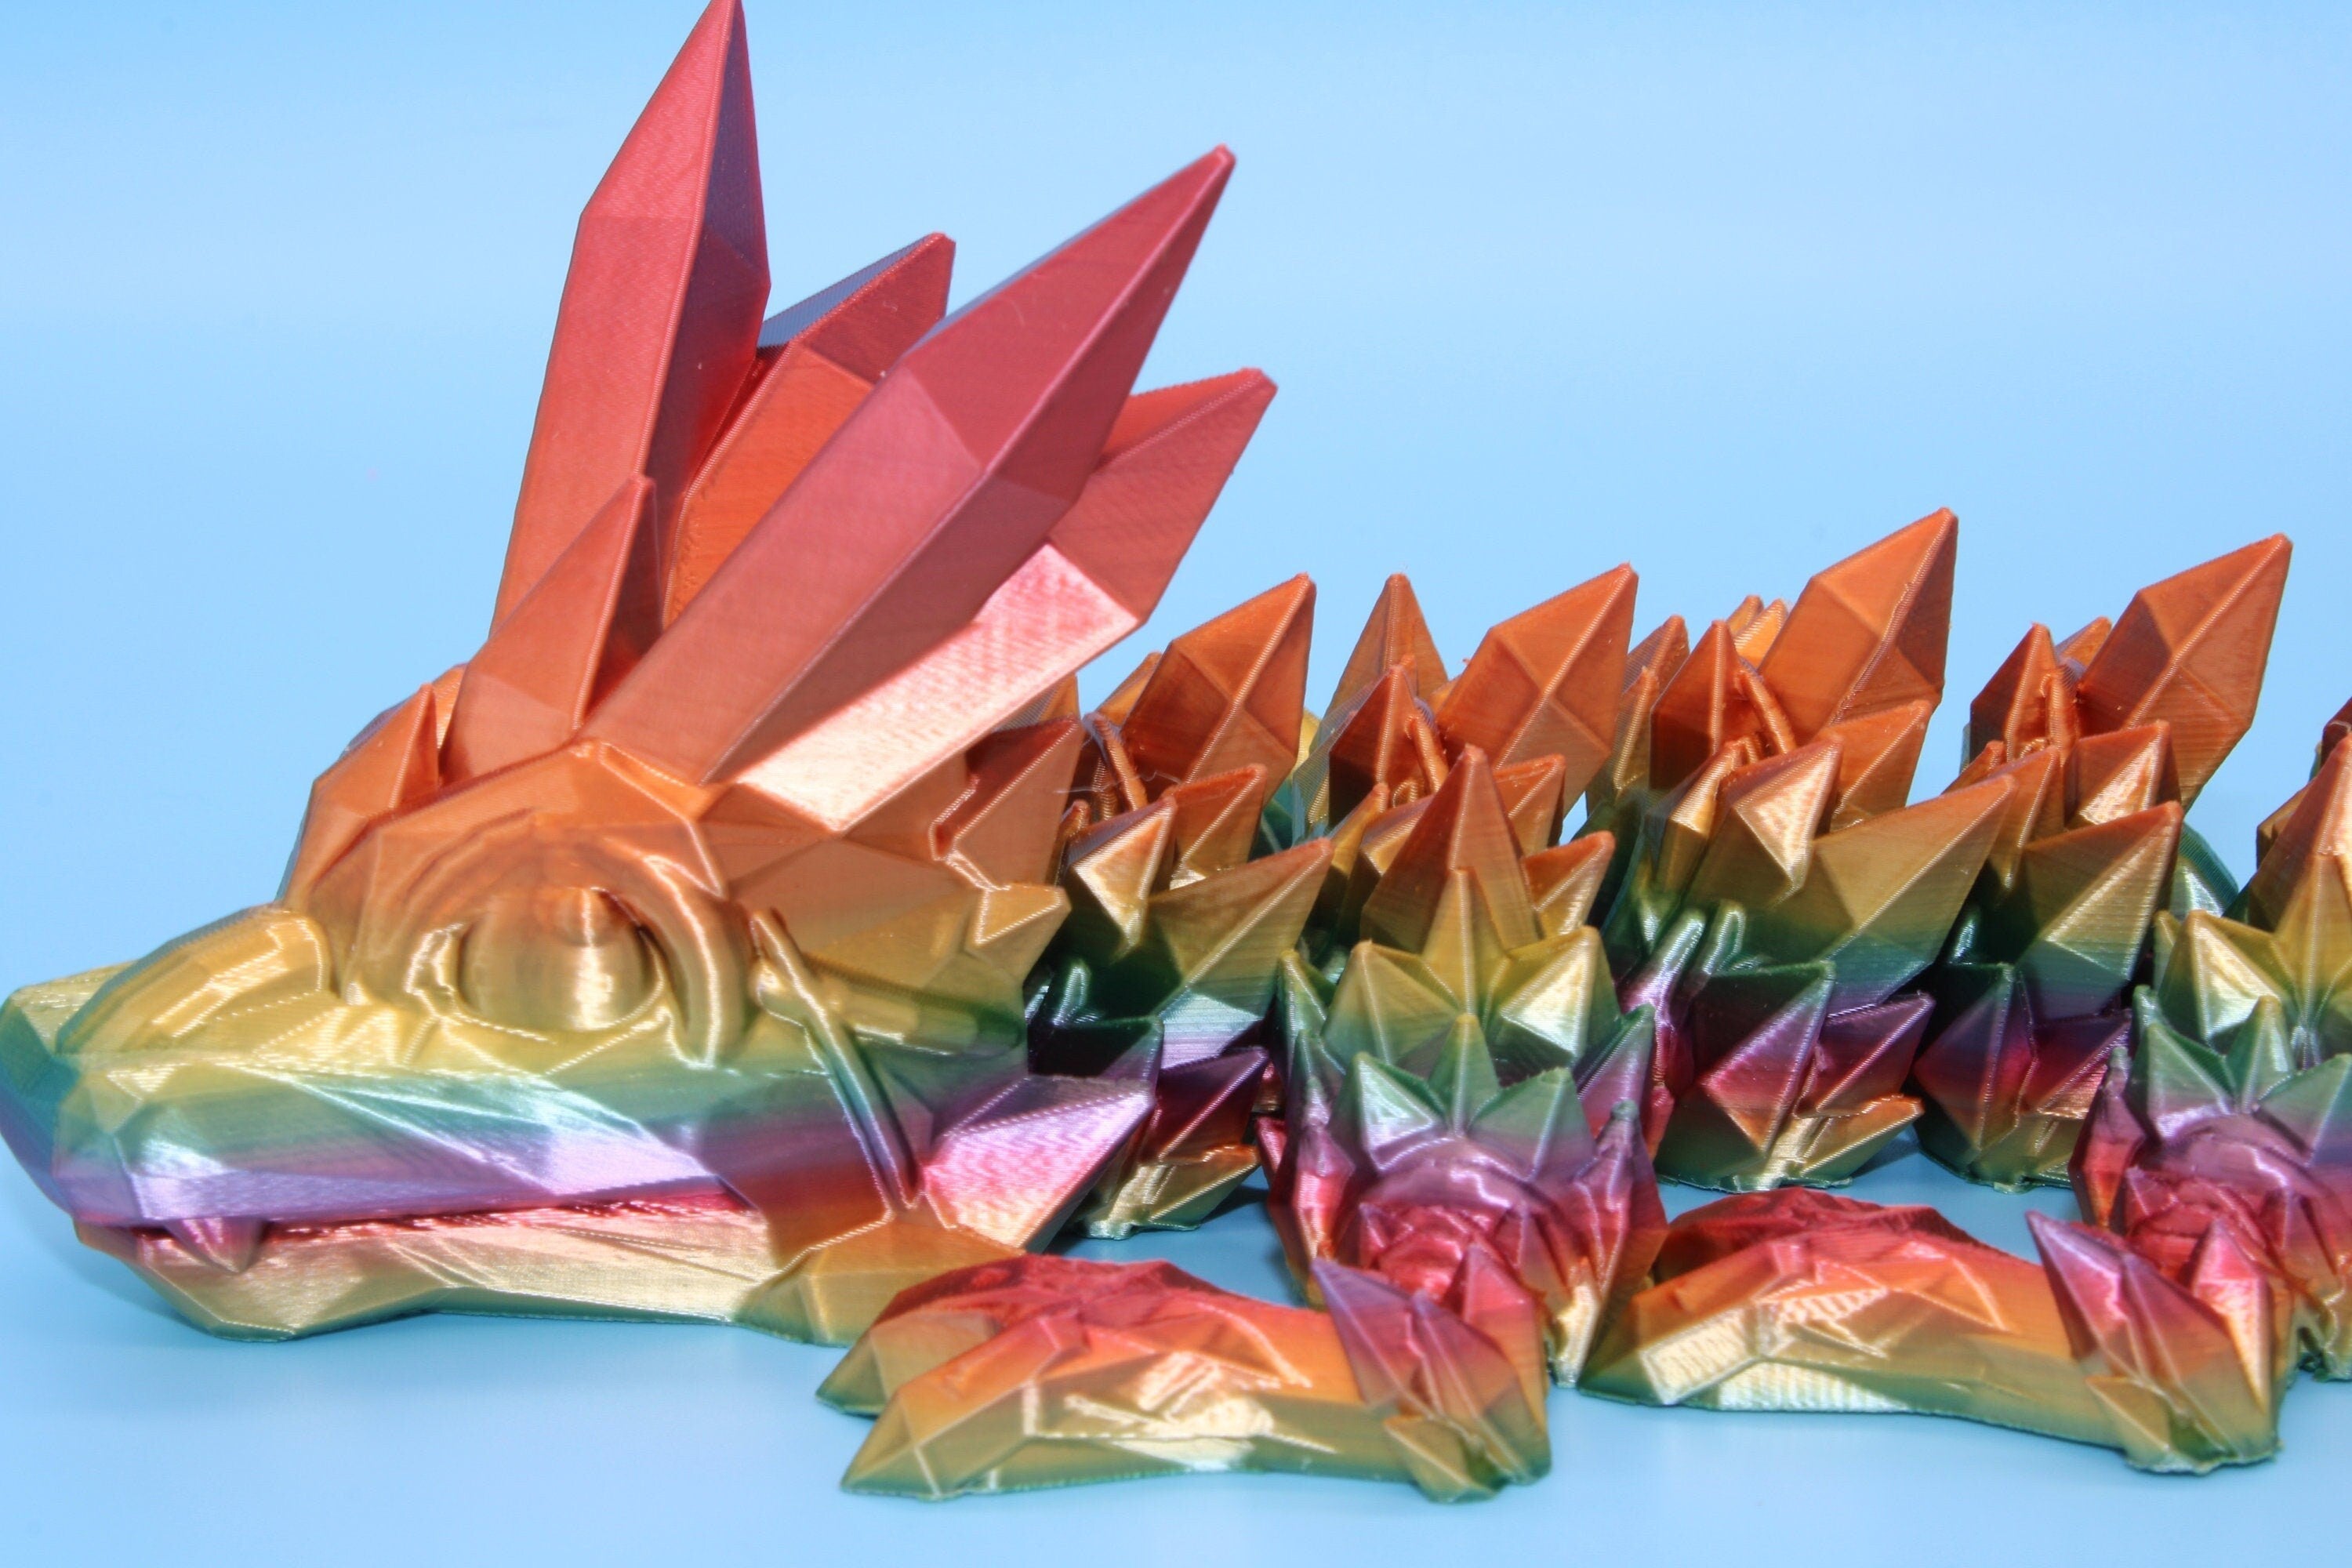 Rainbow Baby Dragon | 3D Printed Crystal Dragon | 11.5 inches Dragon Friend | Sensory Toy | Fidget Toy | Flexi Dragon.